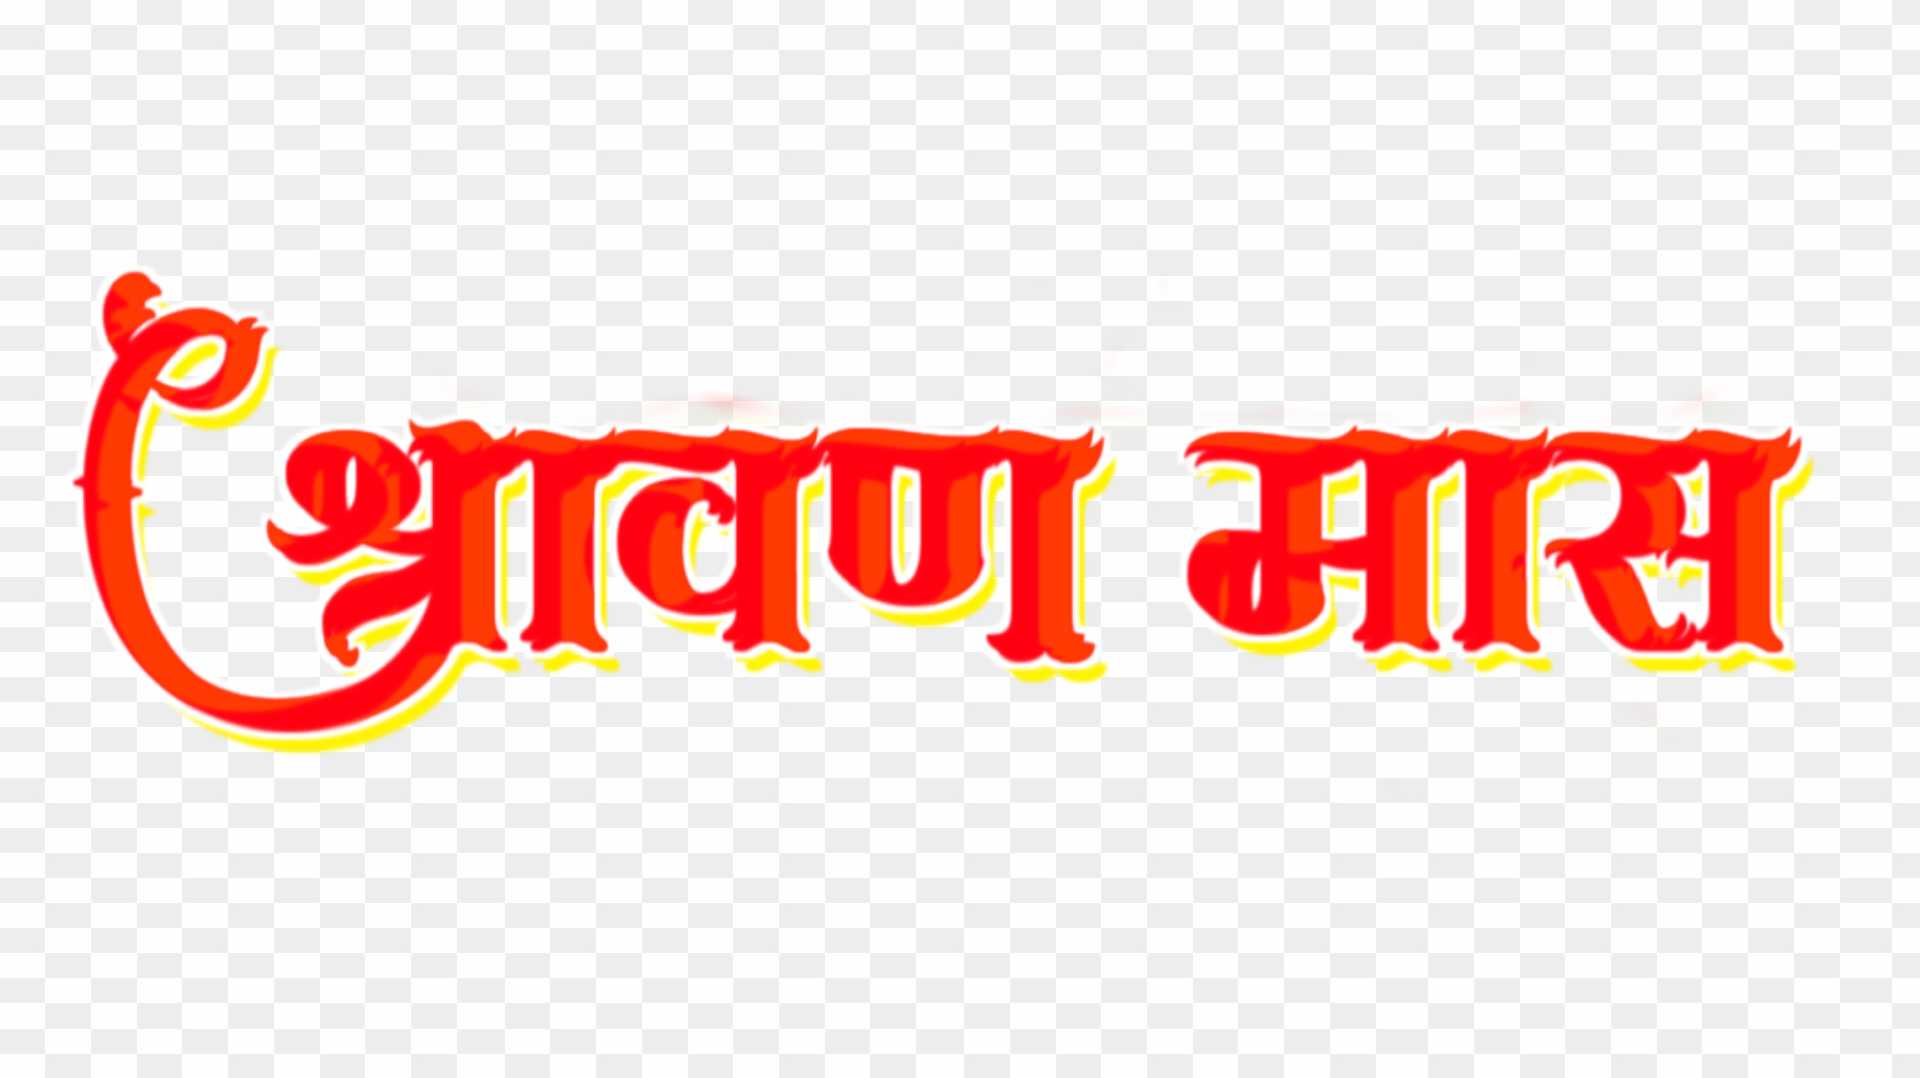 Shravan mass hindi stylish text png images 